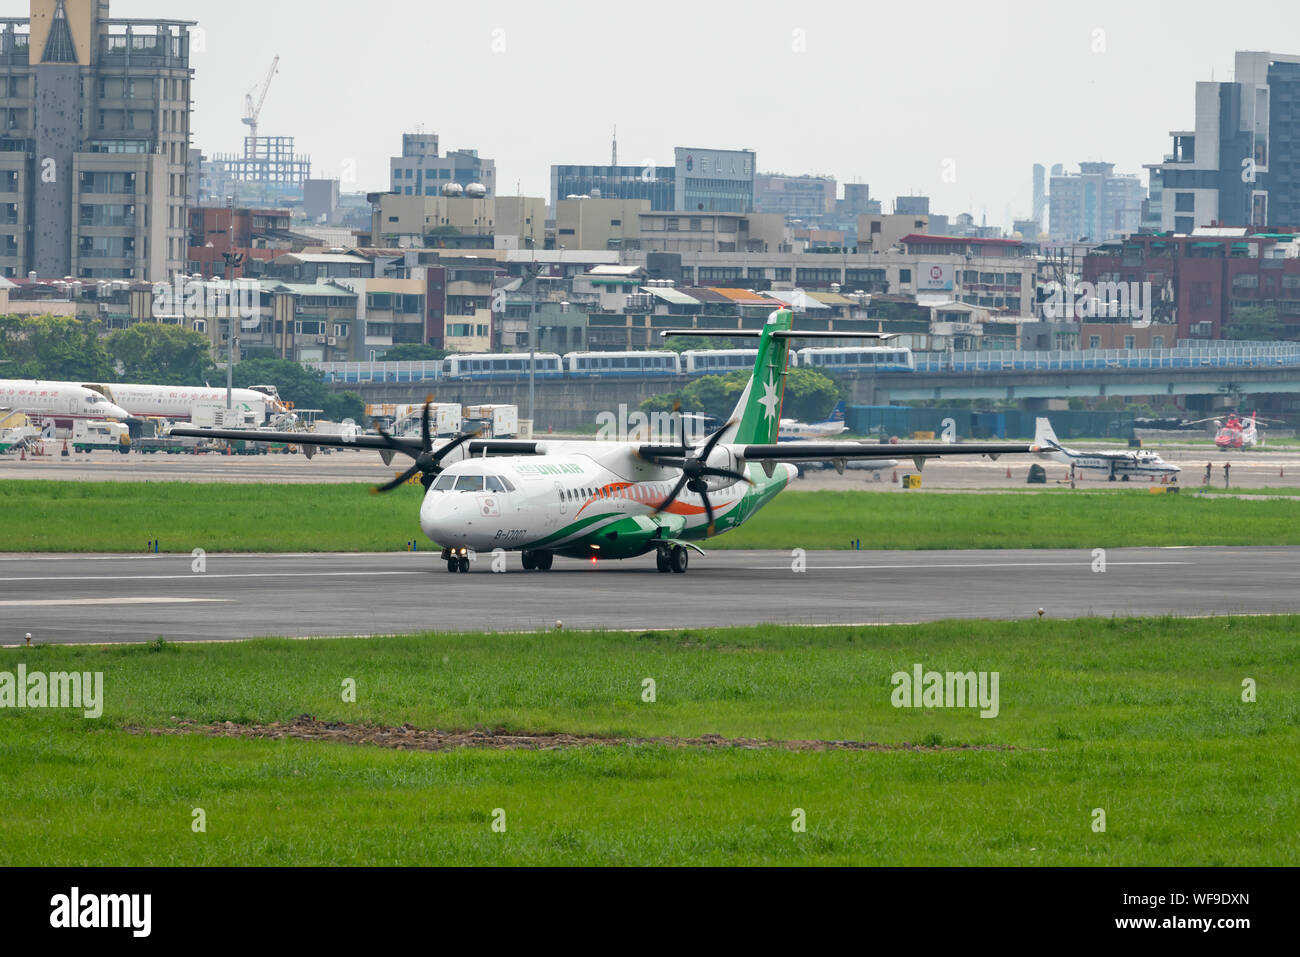 TAIPEI, Taiwán - 19 de mayo de 2019: UNI Air ATR-72-600 gravar en el aeropuerto Songshan de Taipei en Taipei, Taiwán. Foto de stock